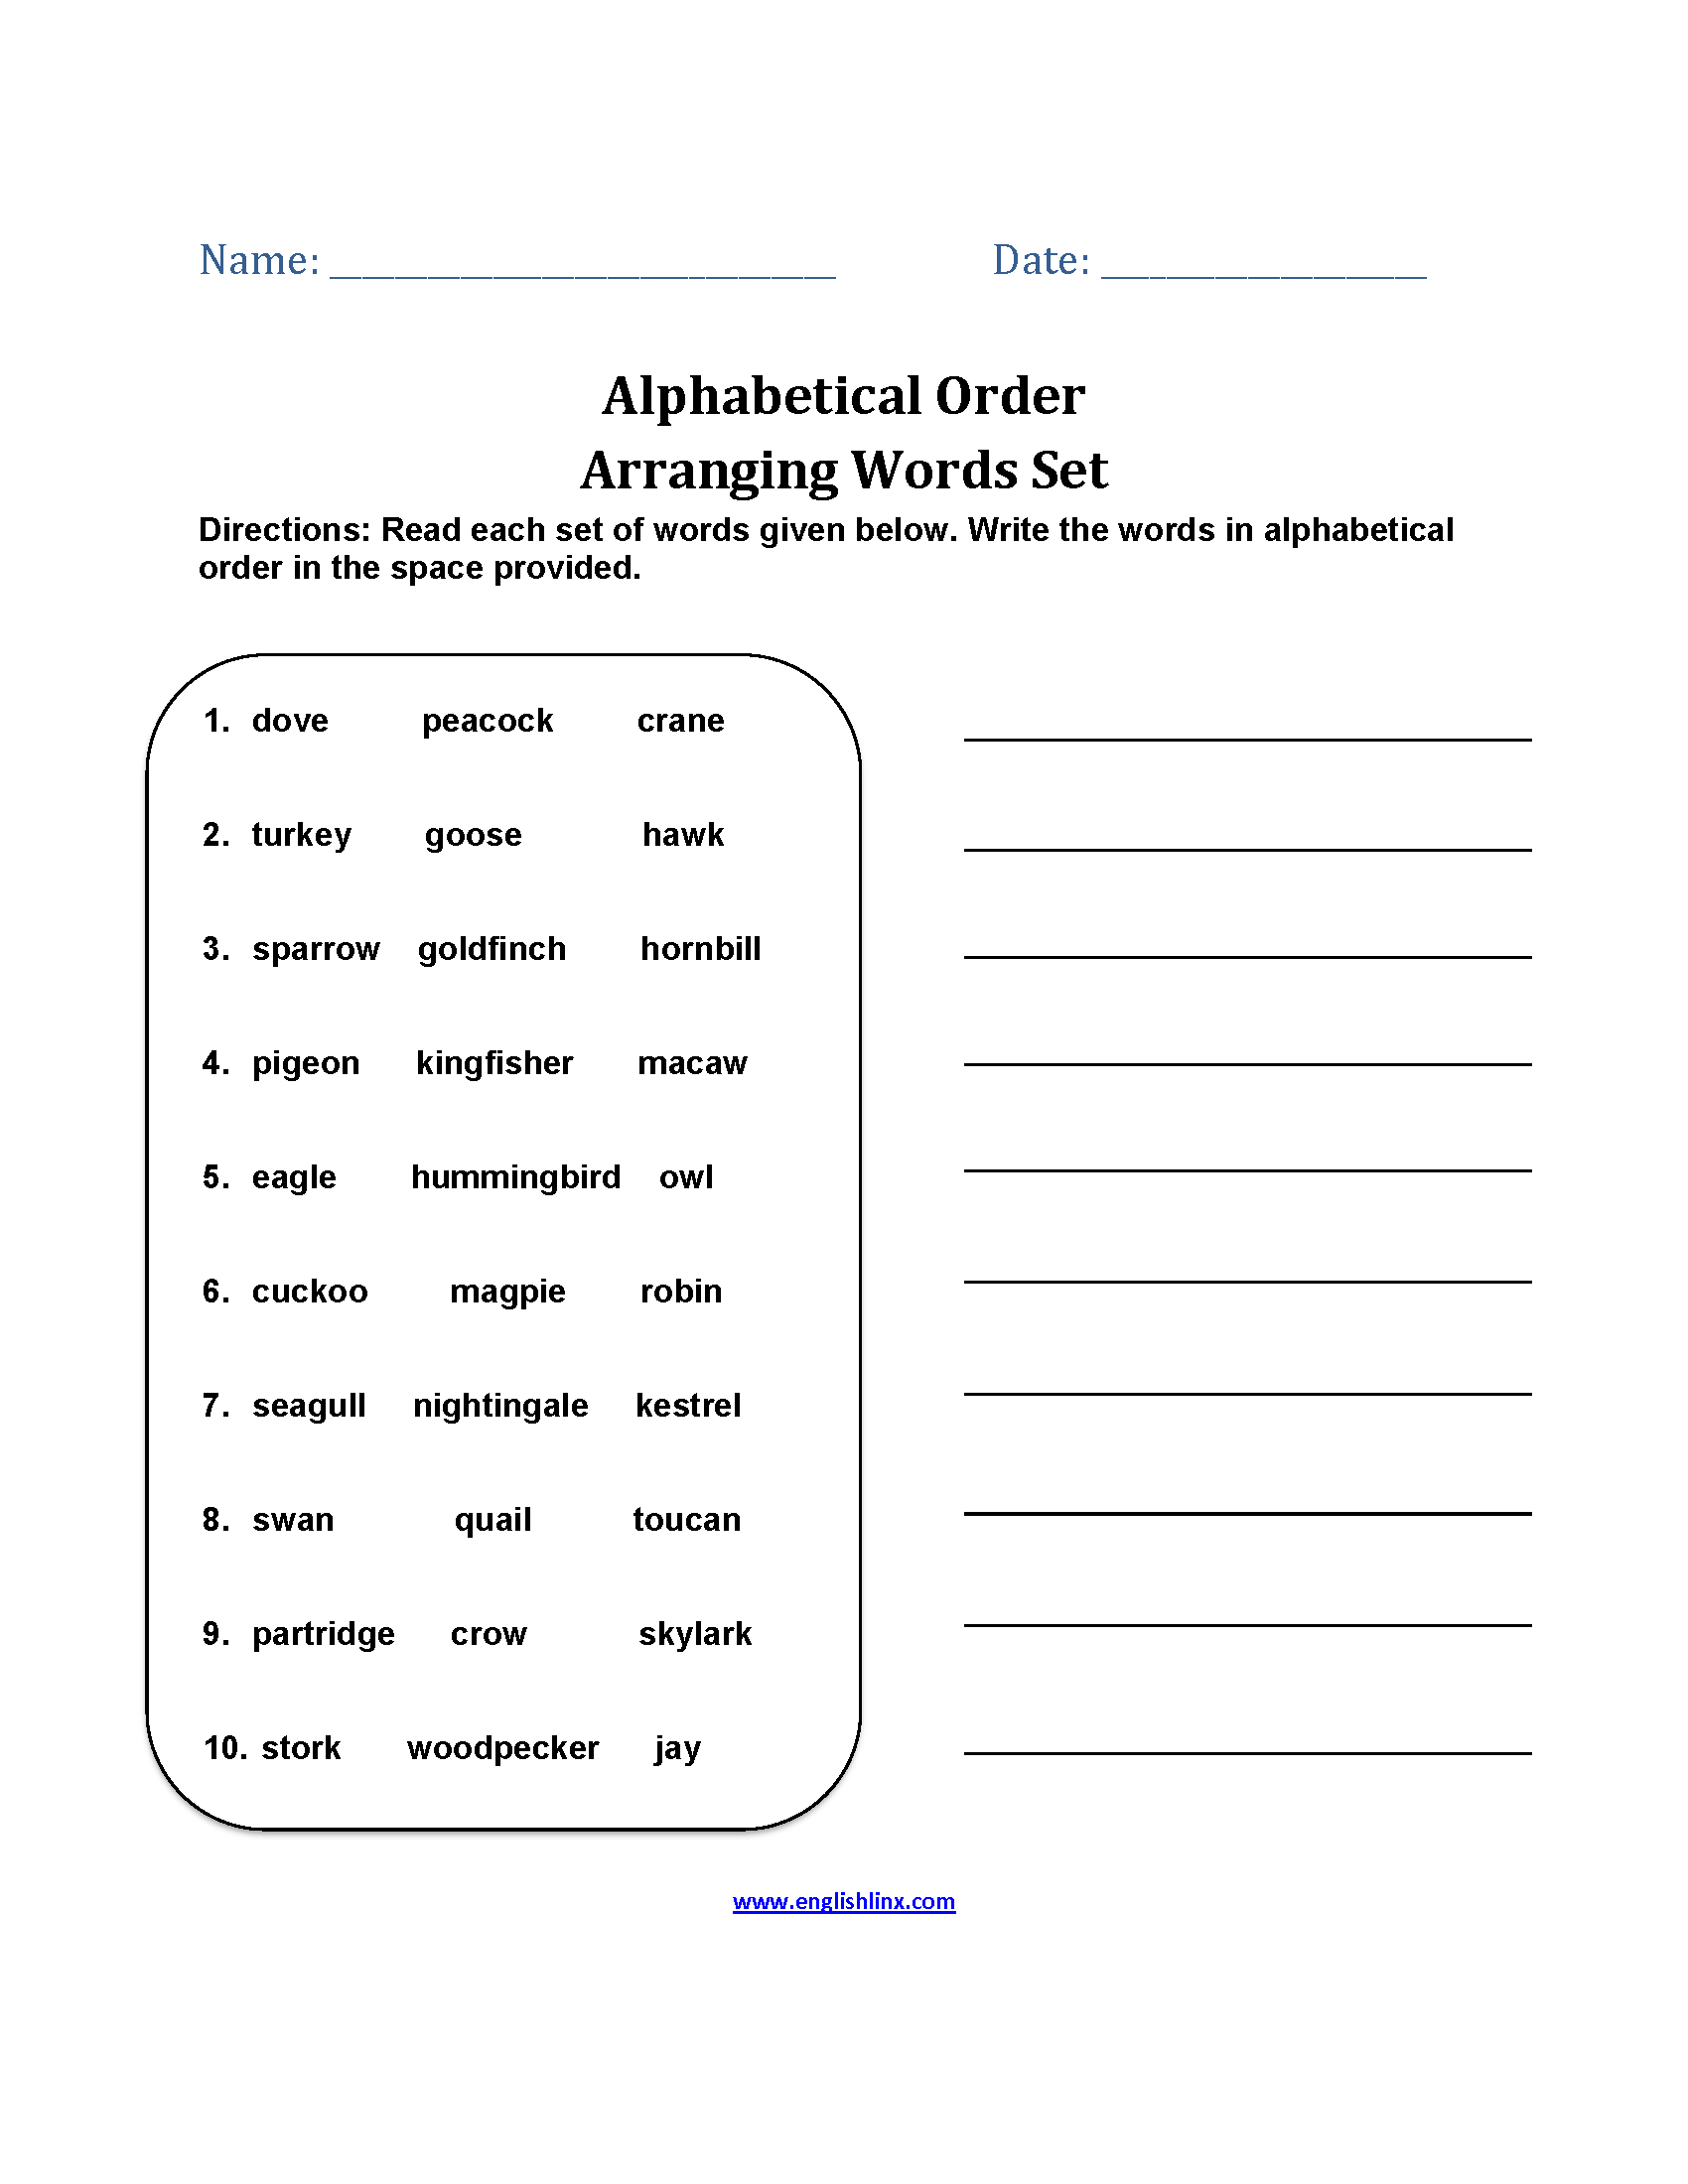 Arranging Word Sets Alphabetical Order Worksheets